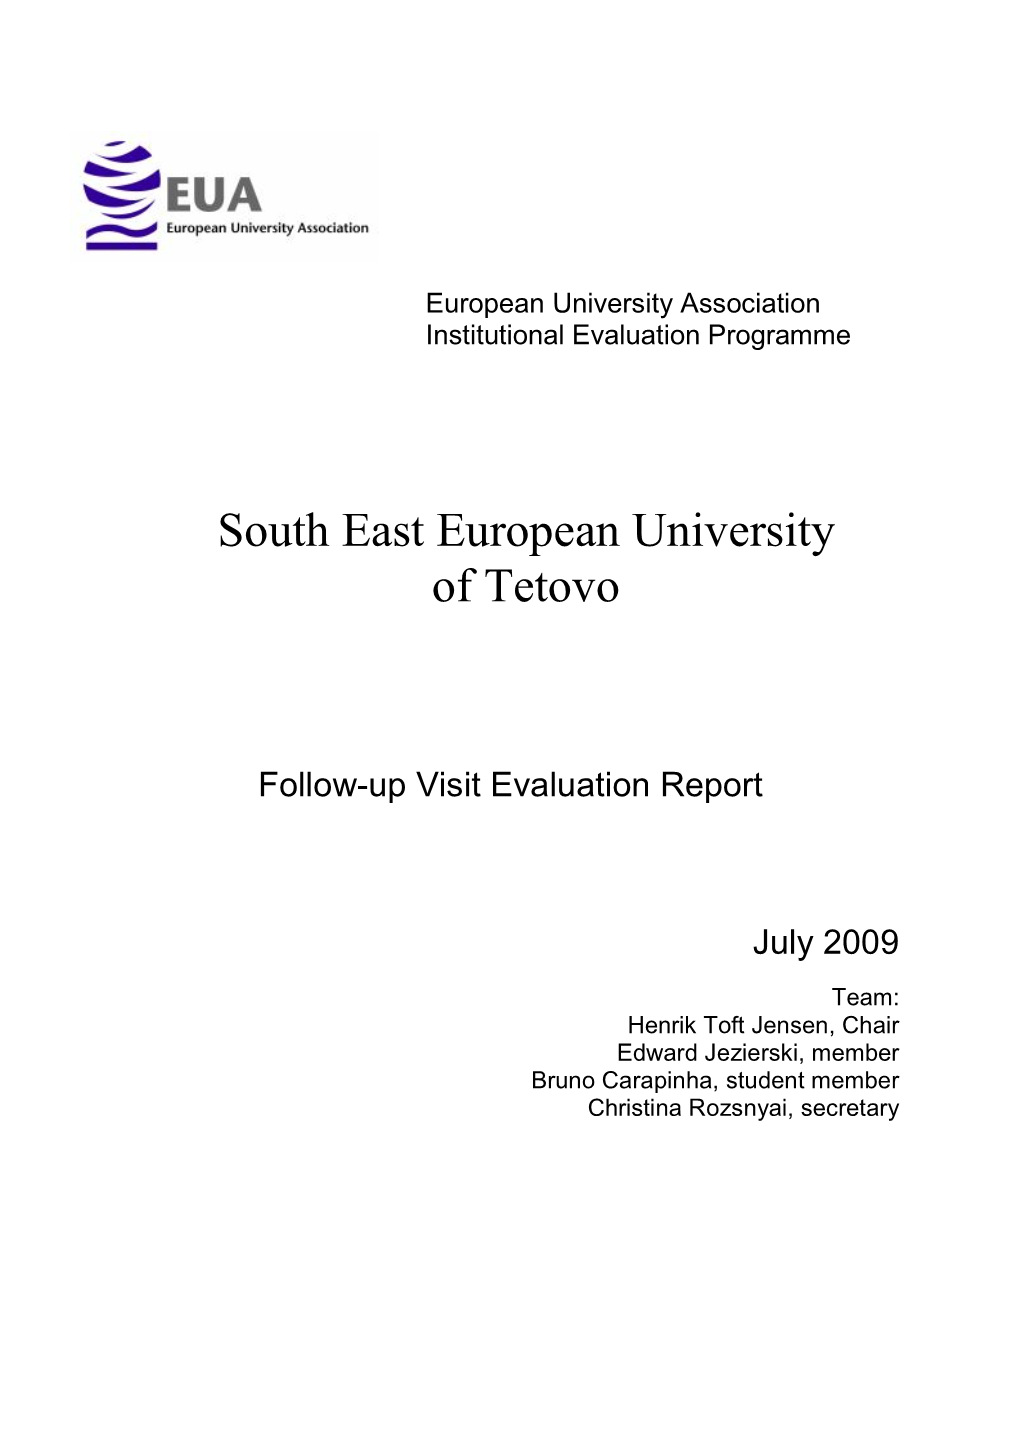 South East European University of Tetovo